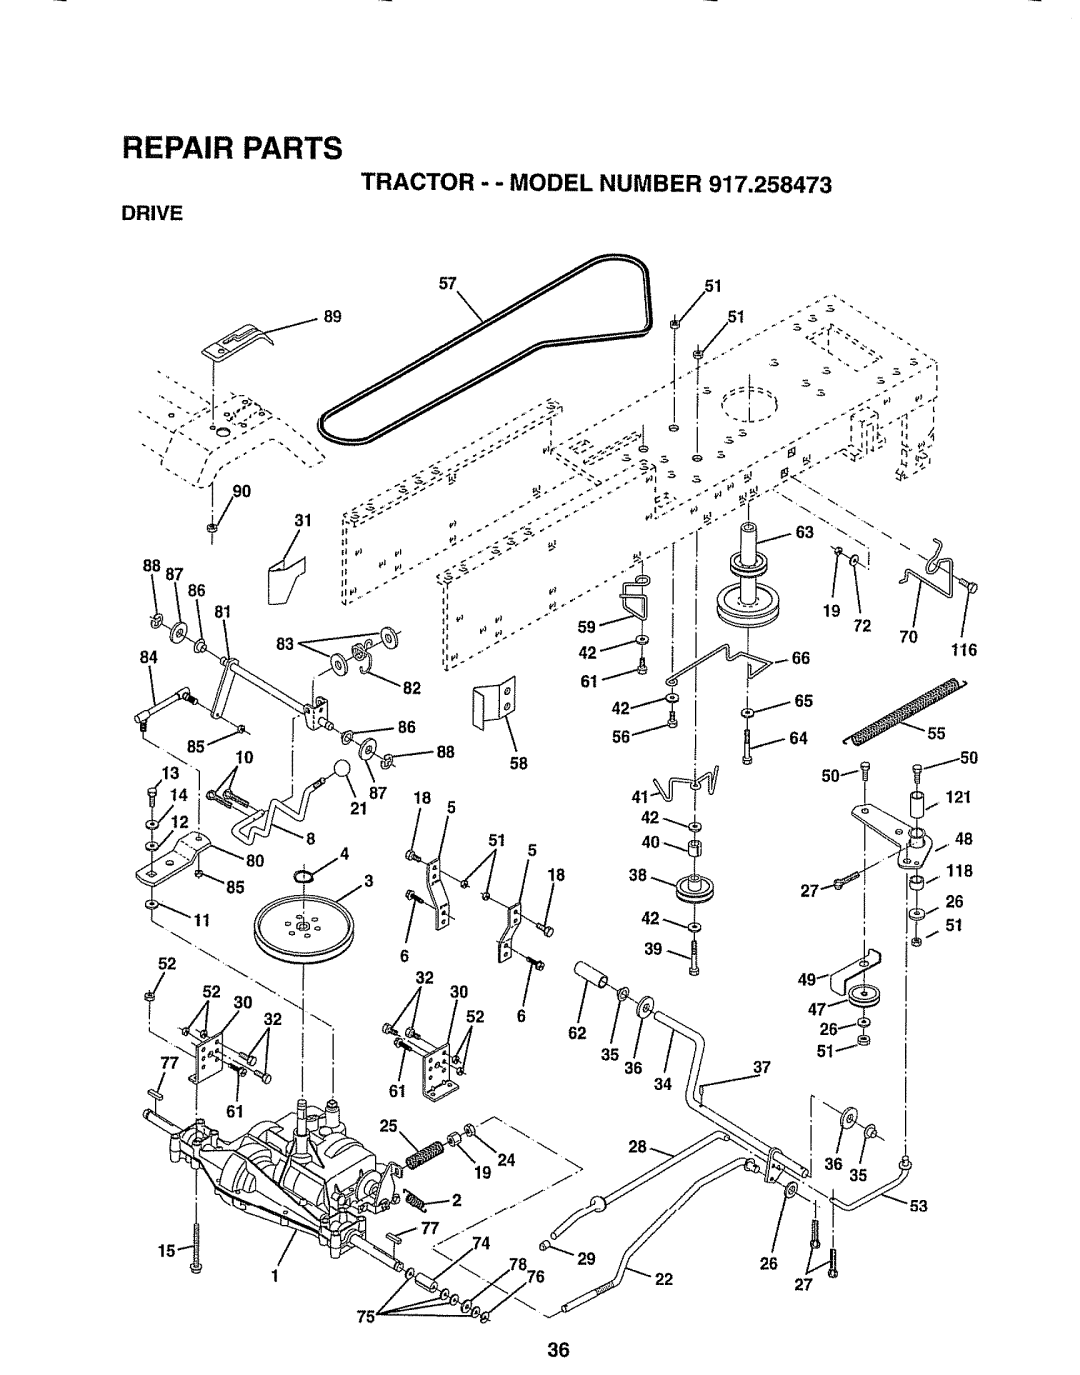 Sears 917.258473 owner manual Tractor - - Model, Number, Drive, 39 _, Repair Parts 